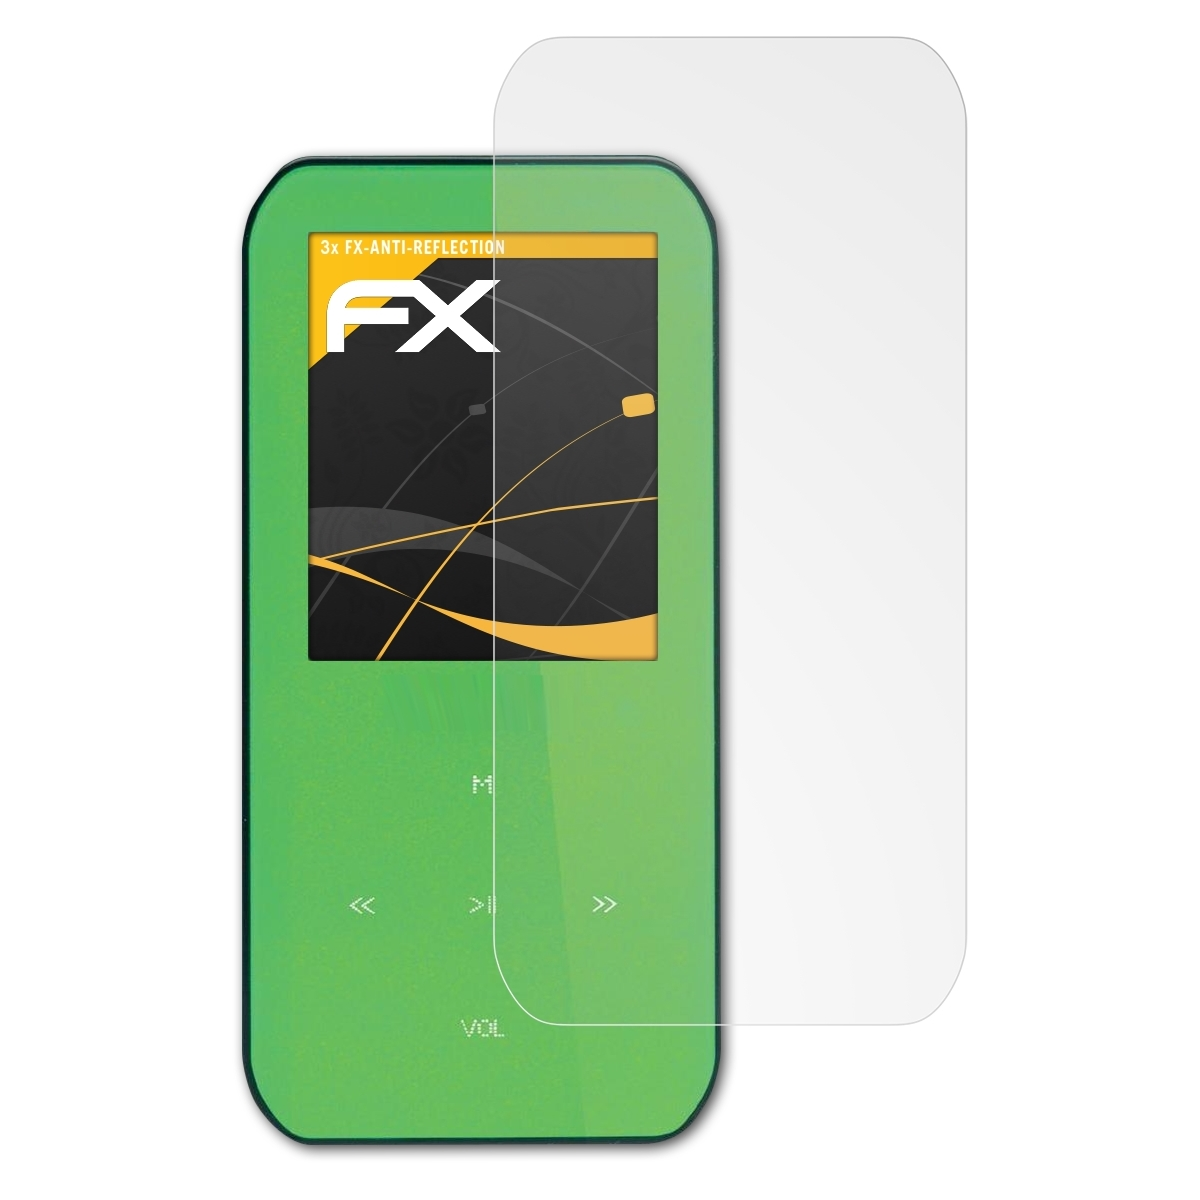 FX-Antireflex Displayschutz(für Xemio-655) Lenco ATFOLIX 3x